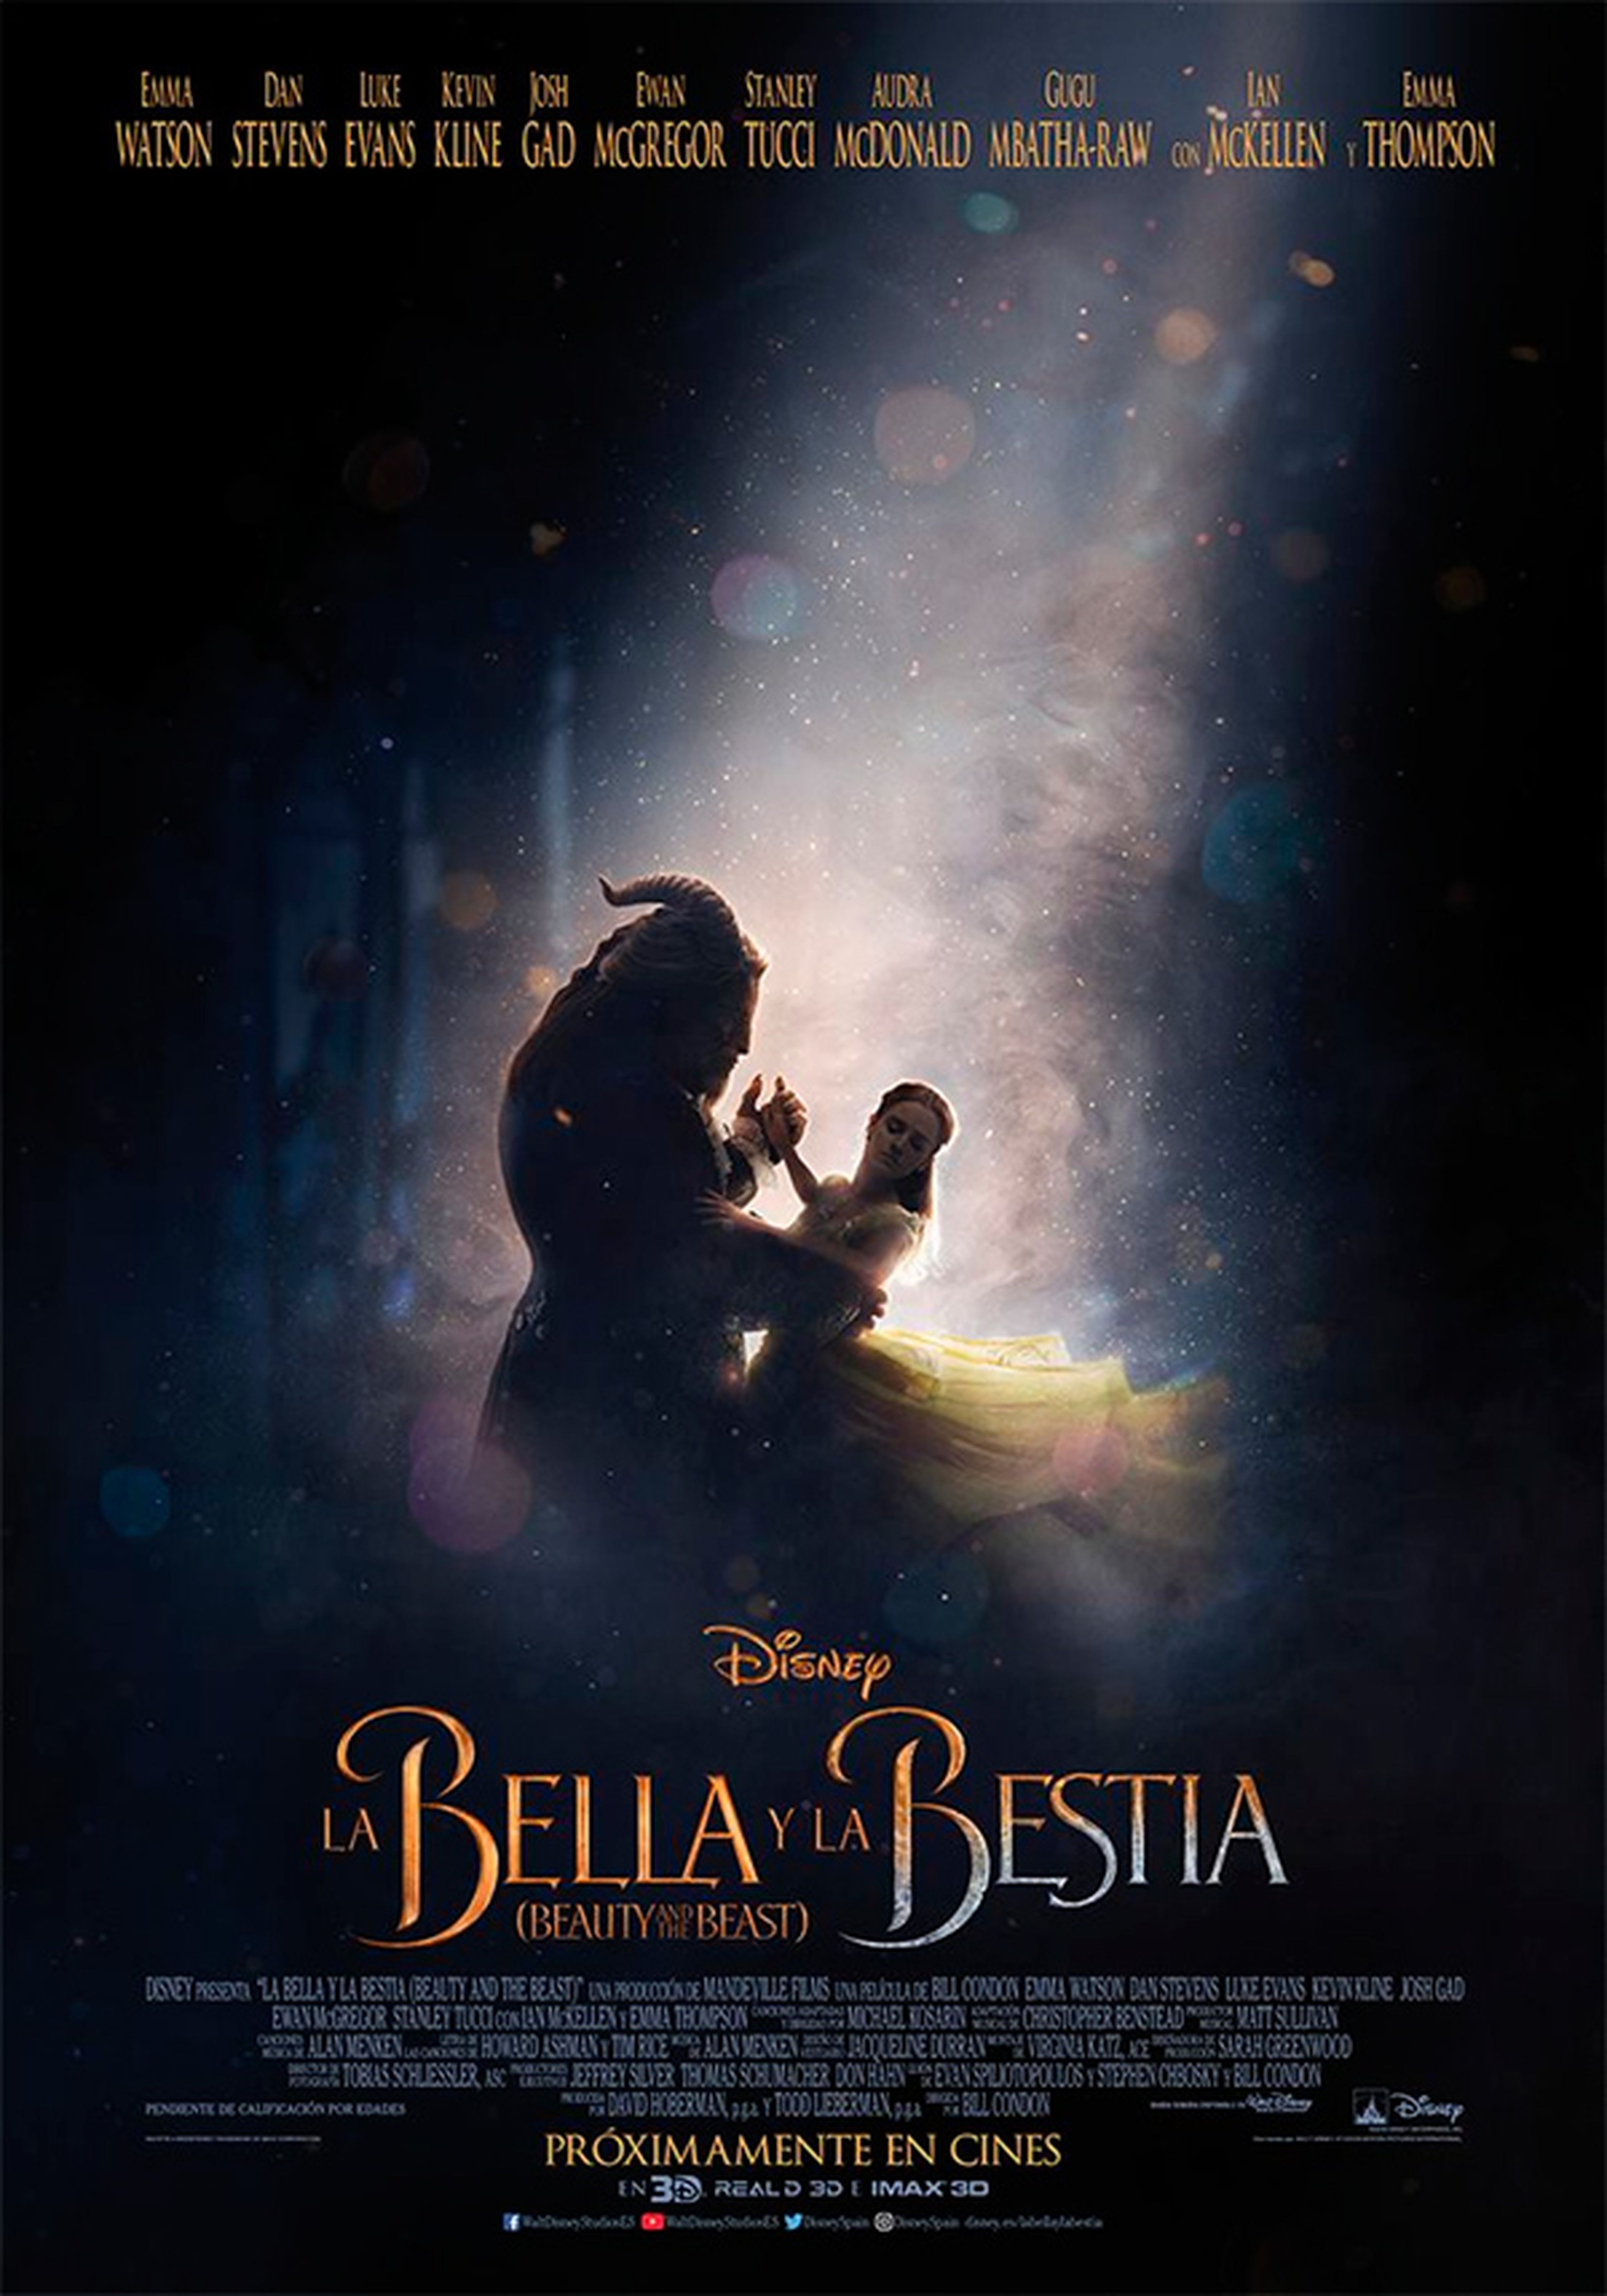 La Bella y la Bestia - Póster en español